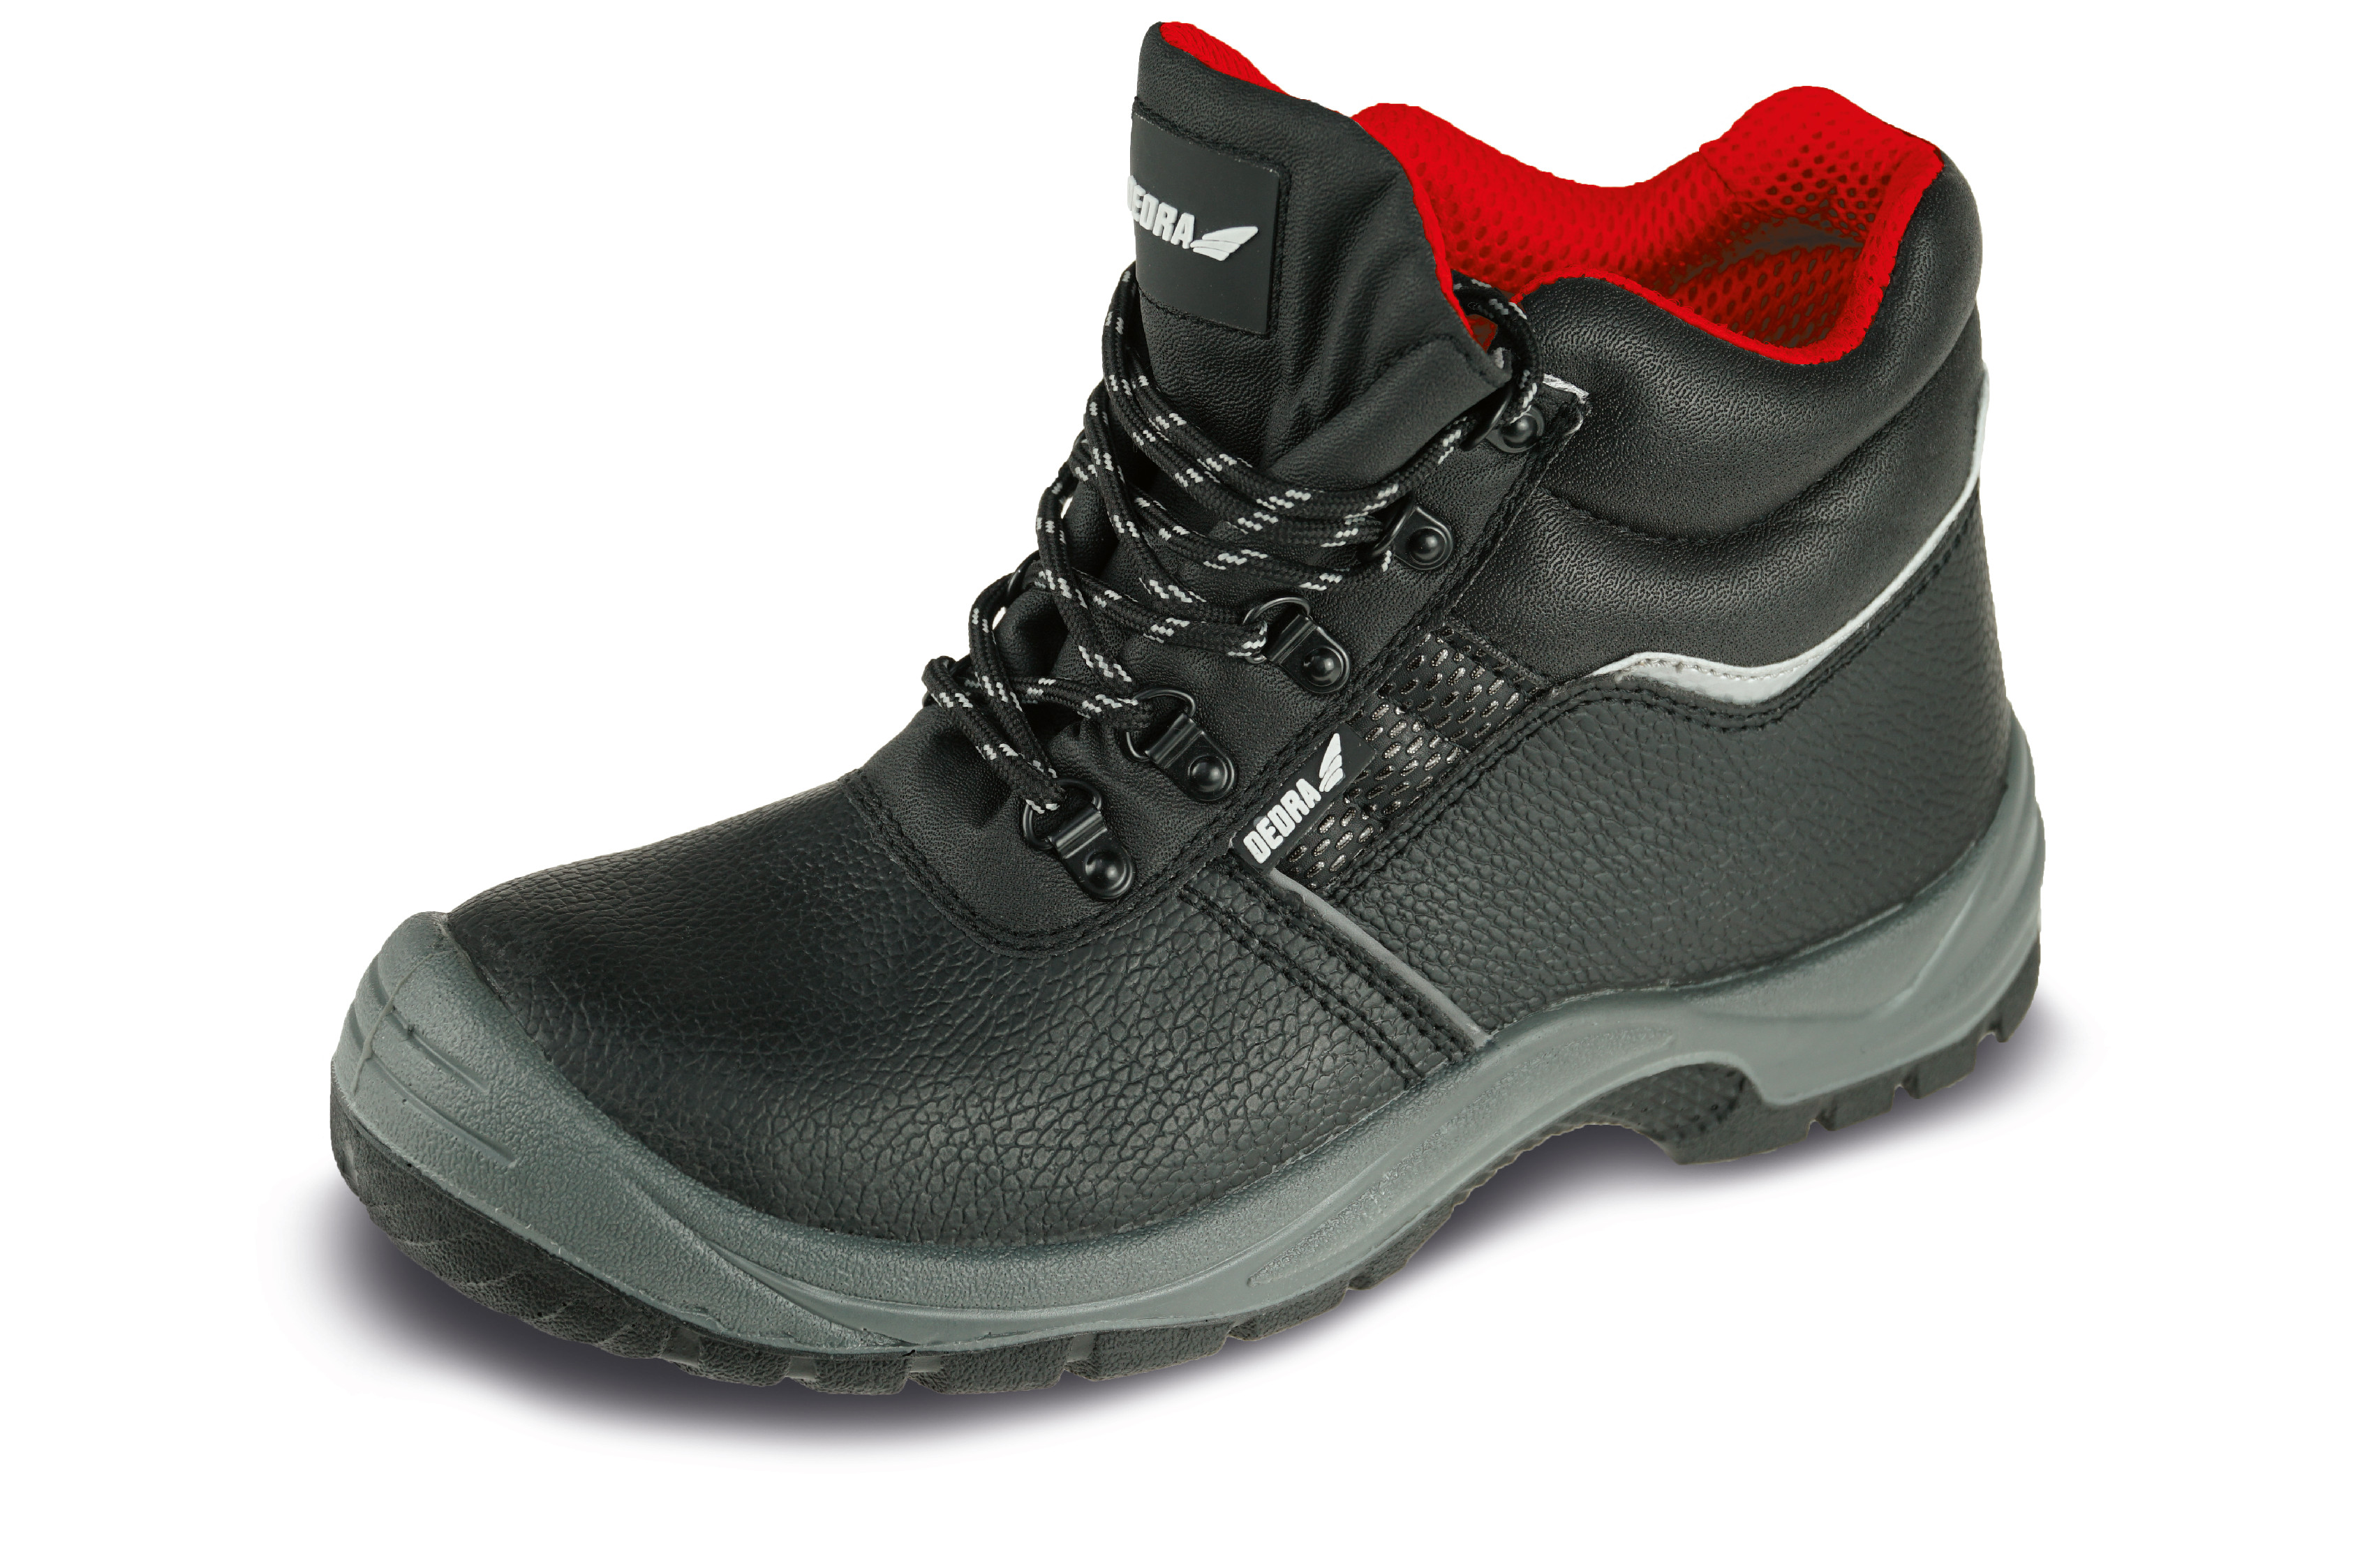 Bezpečnostní boty T1AW, kožené, velikost: 43, kat. S3 SRC DEDRA BH9T1AW-43 + Dárek, servis bez starostí v hodnotě 300Kč